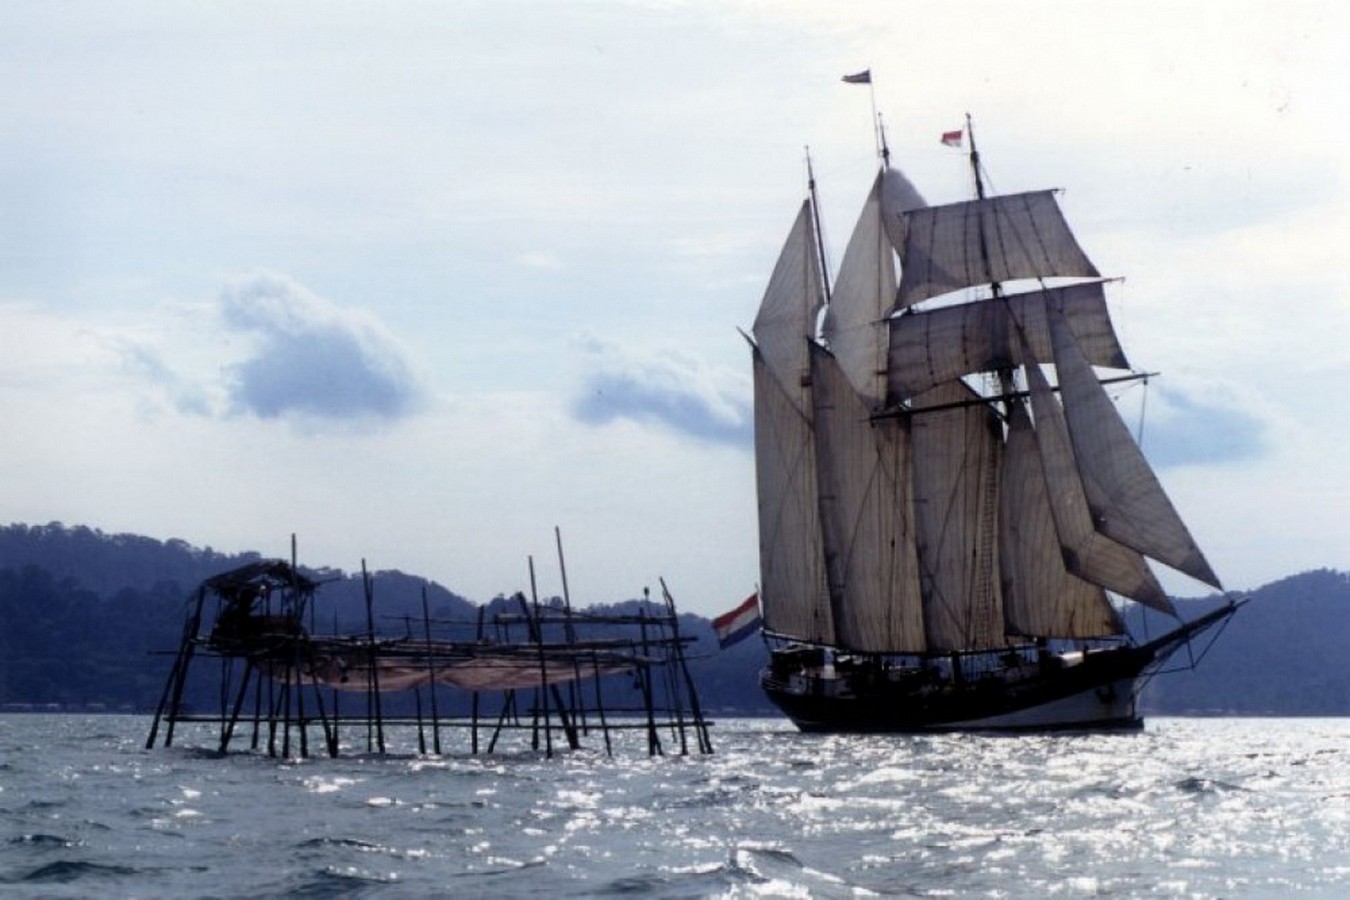 51m topsail schooner 'Oosterschelde'